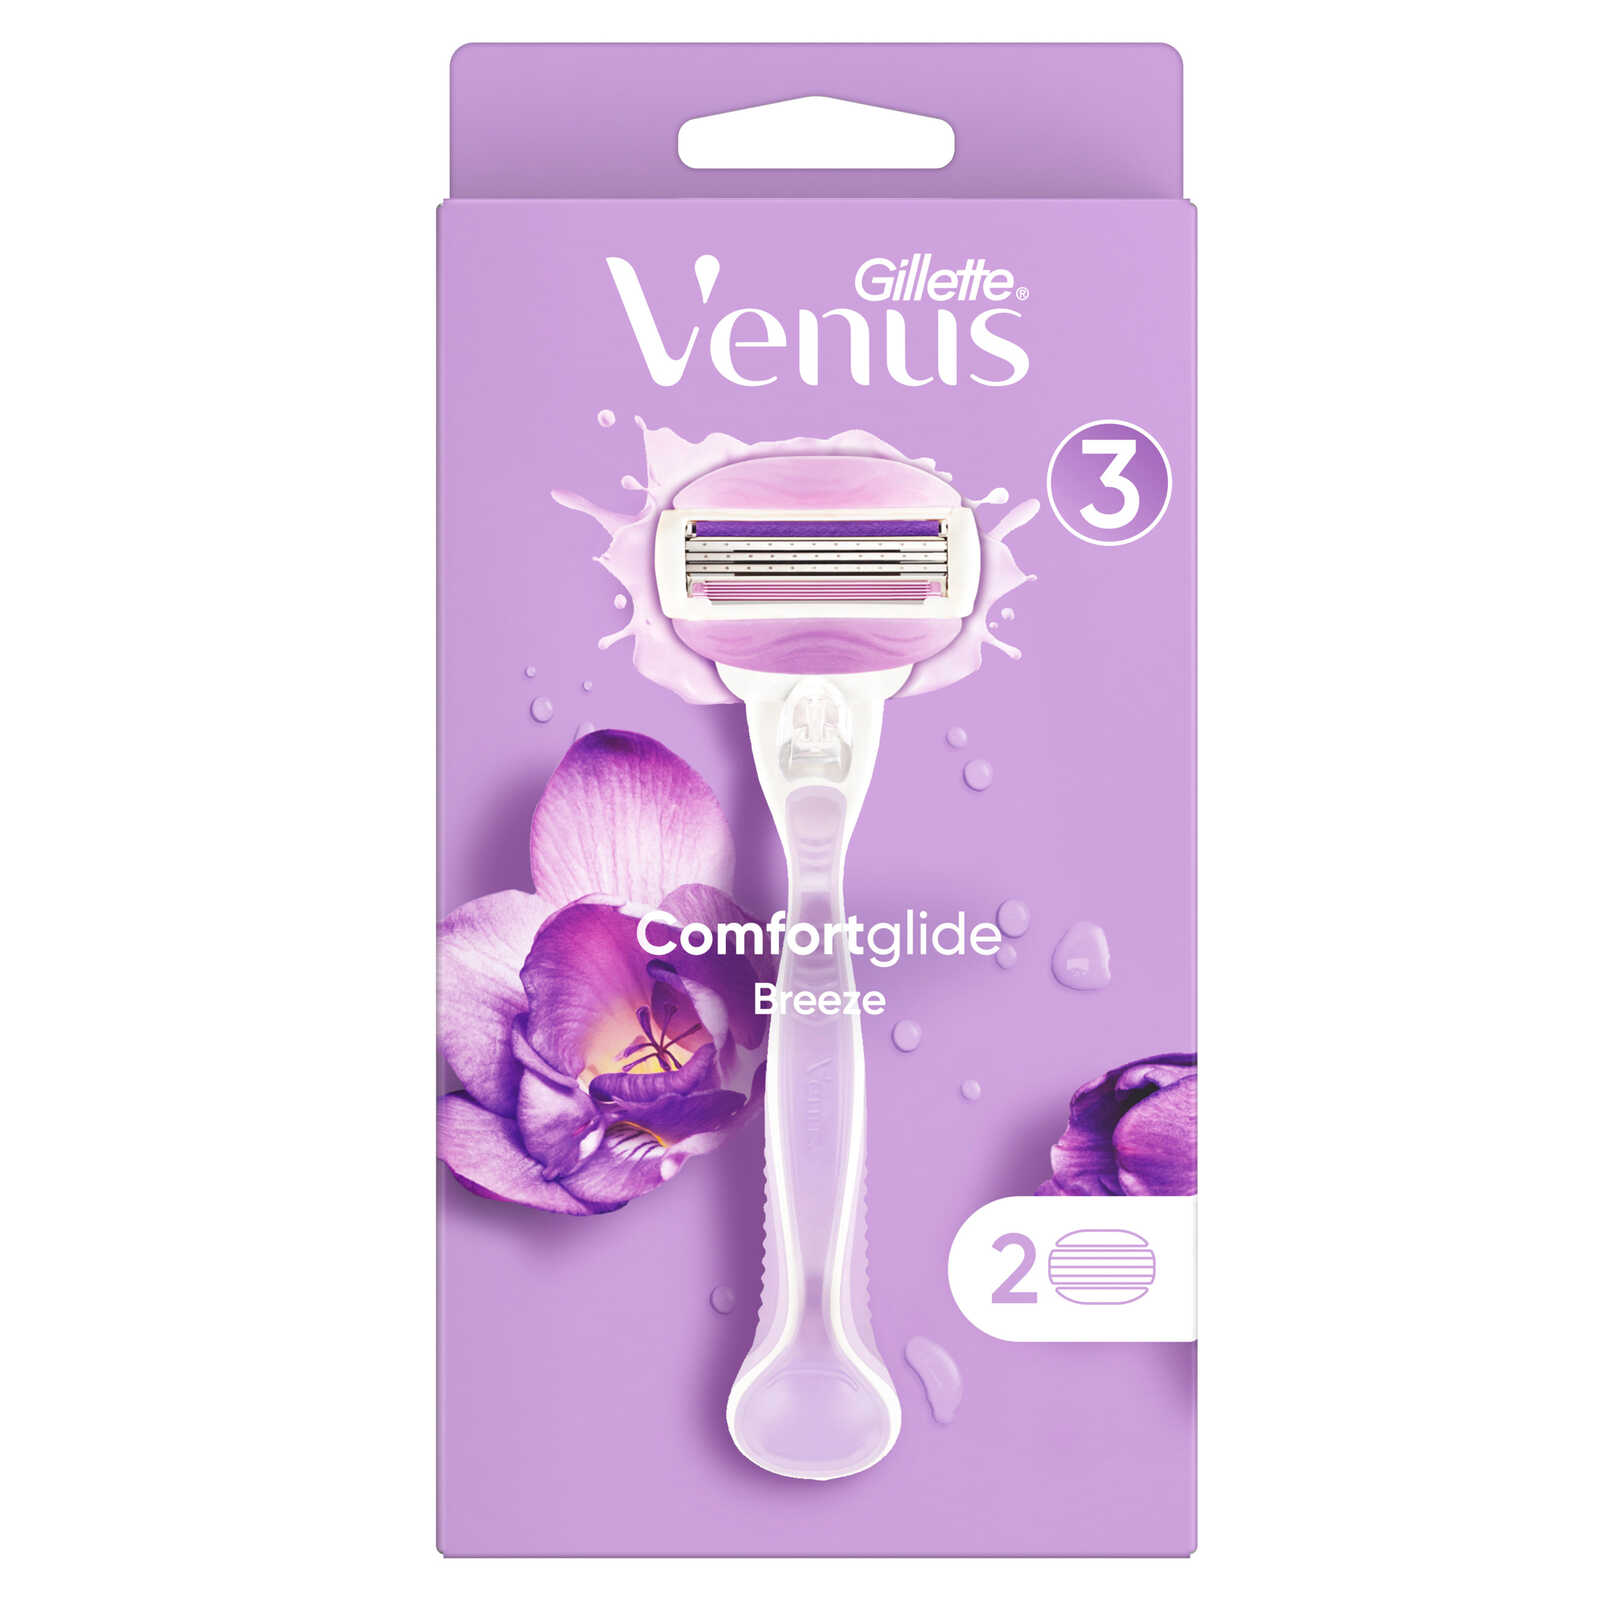 Venus-Venus